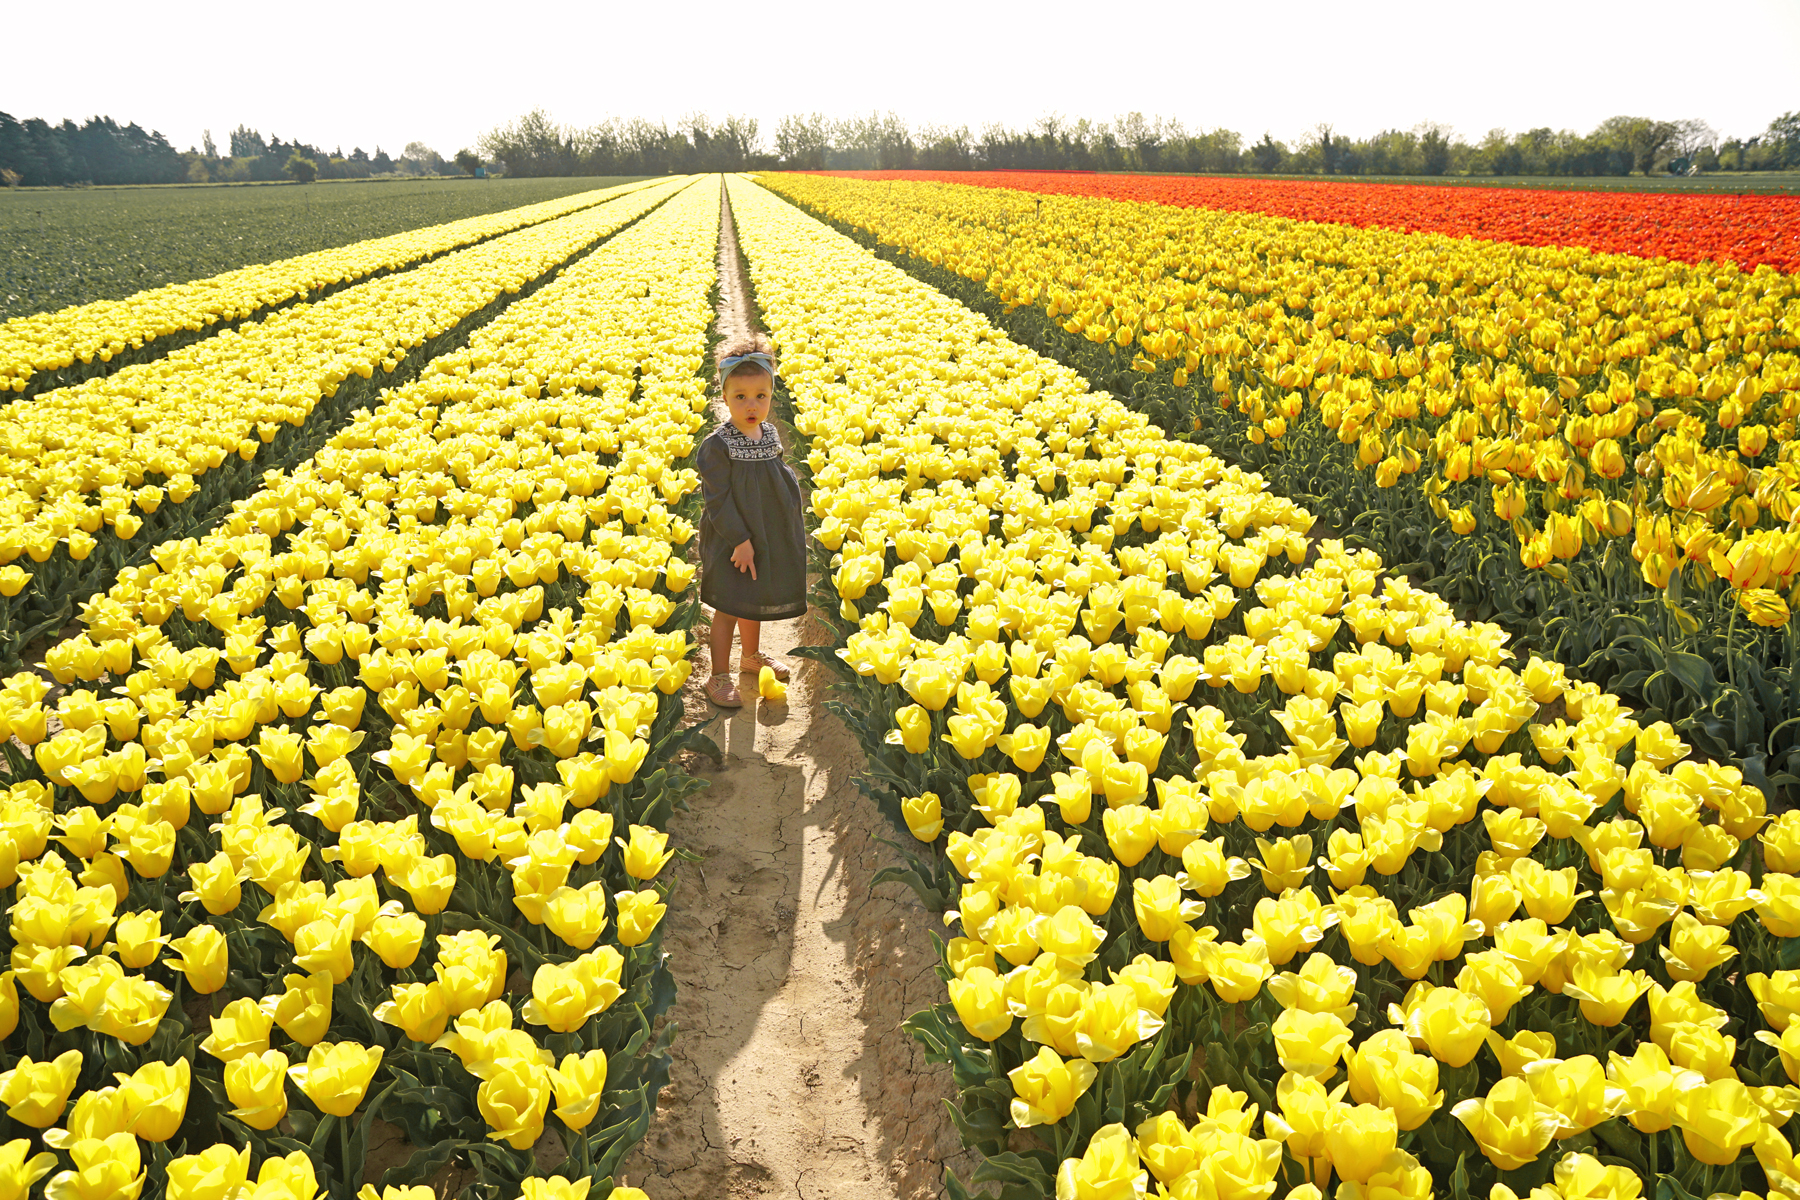 Petite fille dans un champs de tulipes